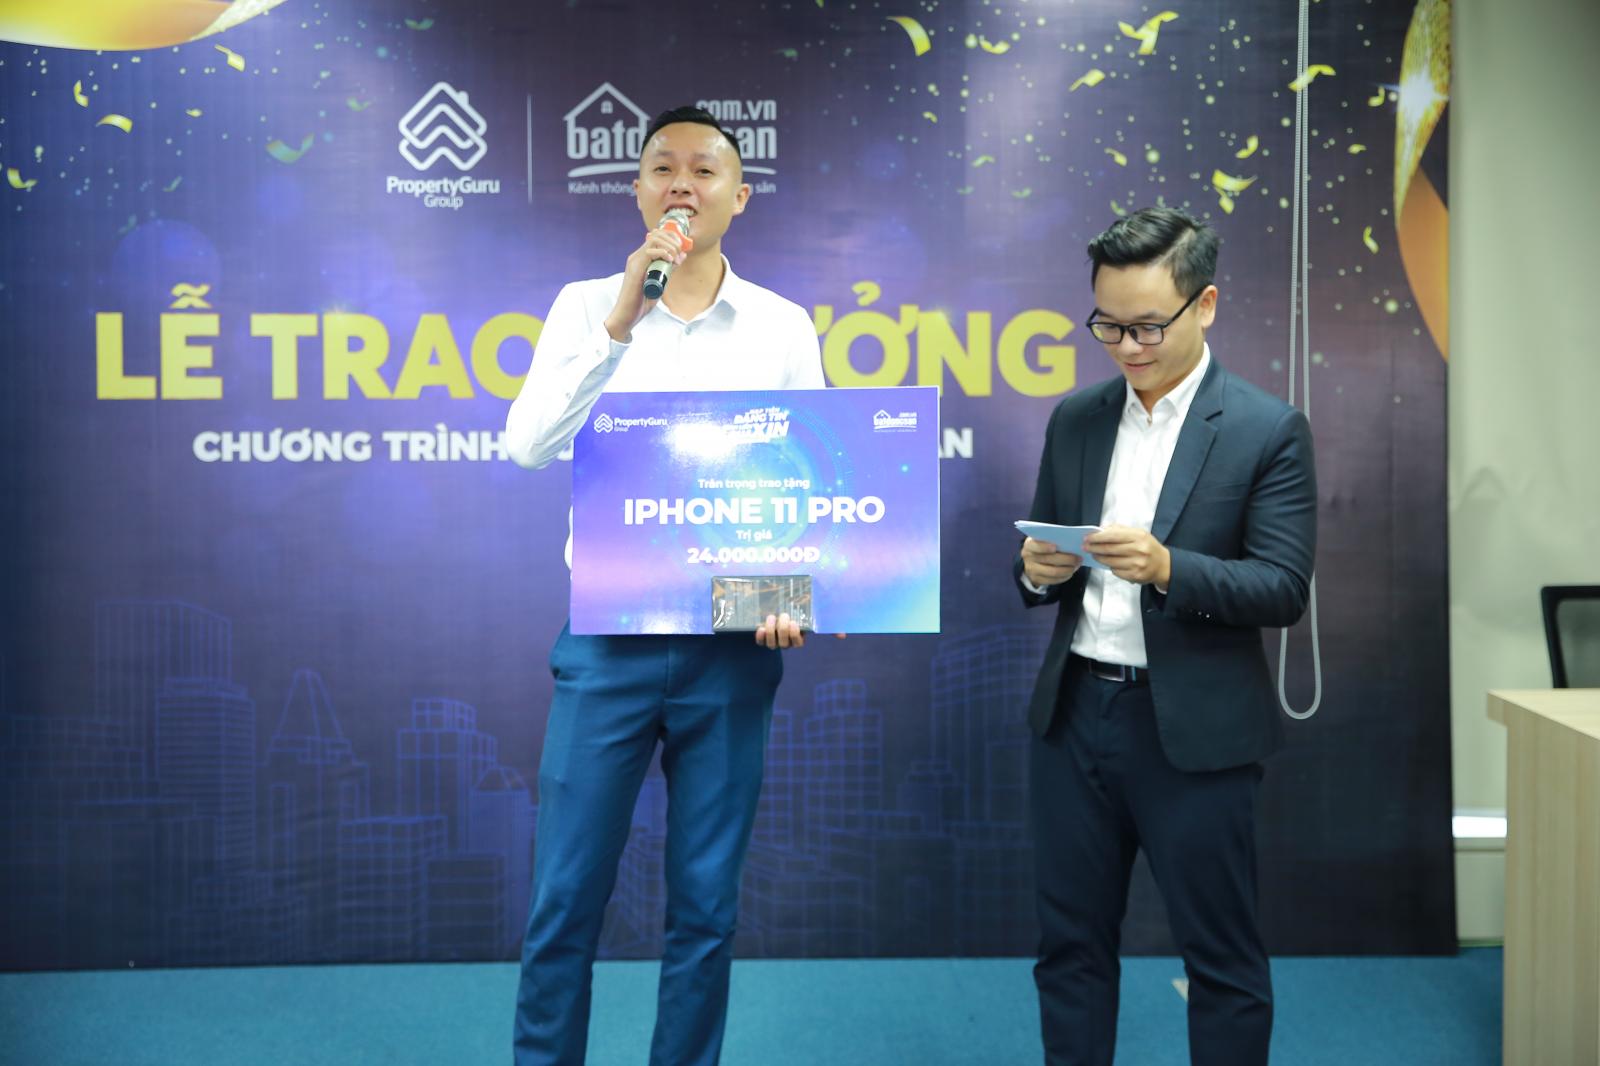  Anh Nguyễn Đức Trung – khách hàng may mắn trúng giải thưởng Iphone 11